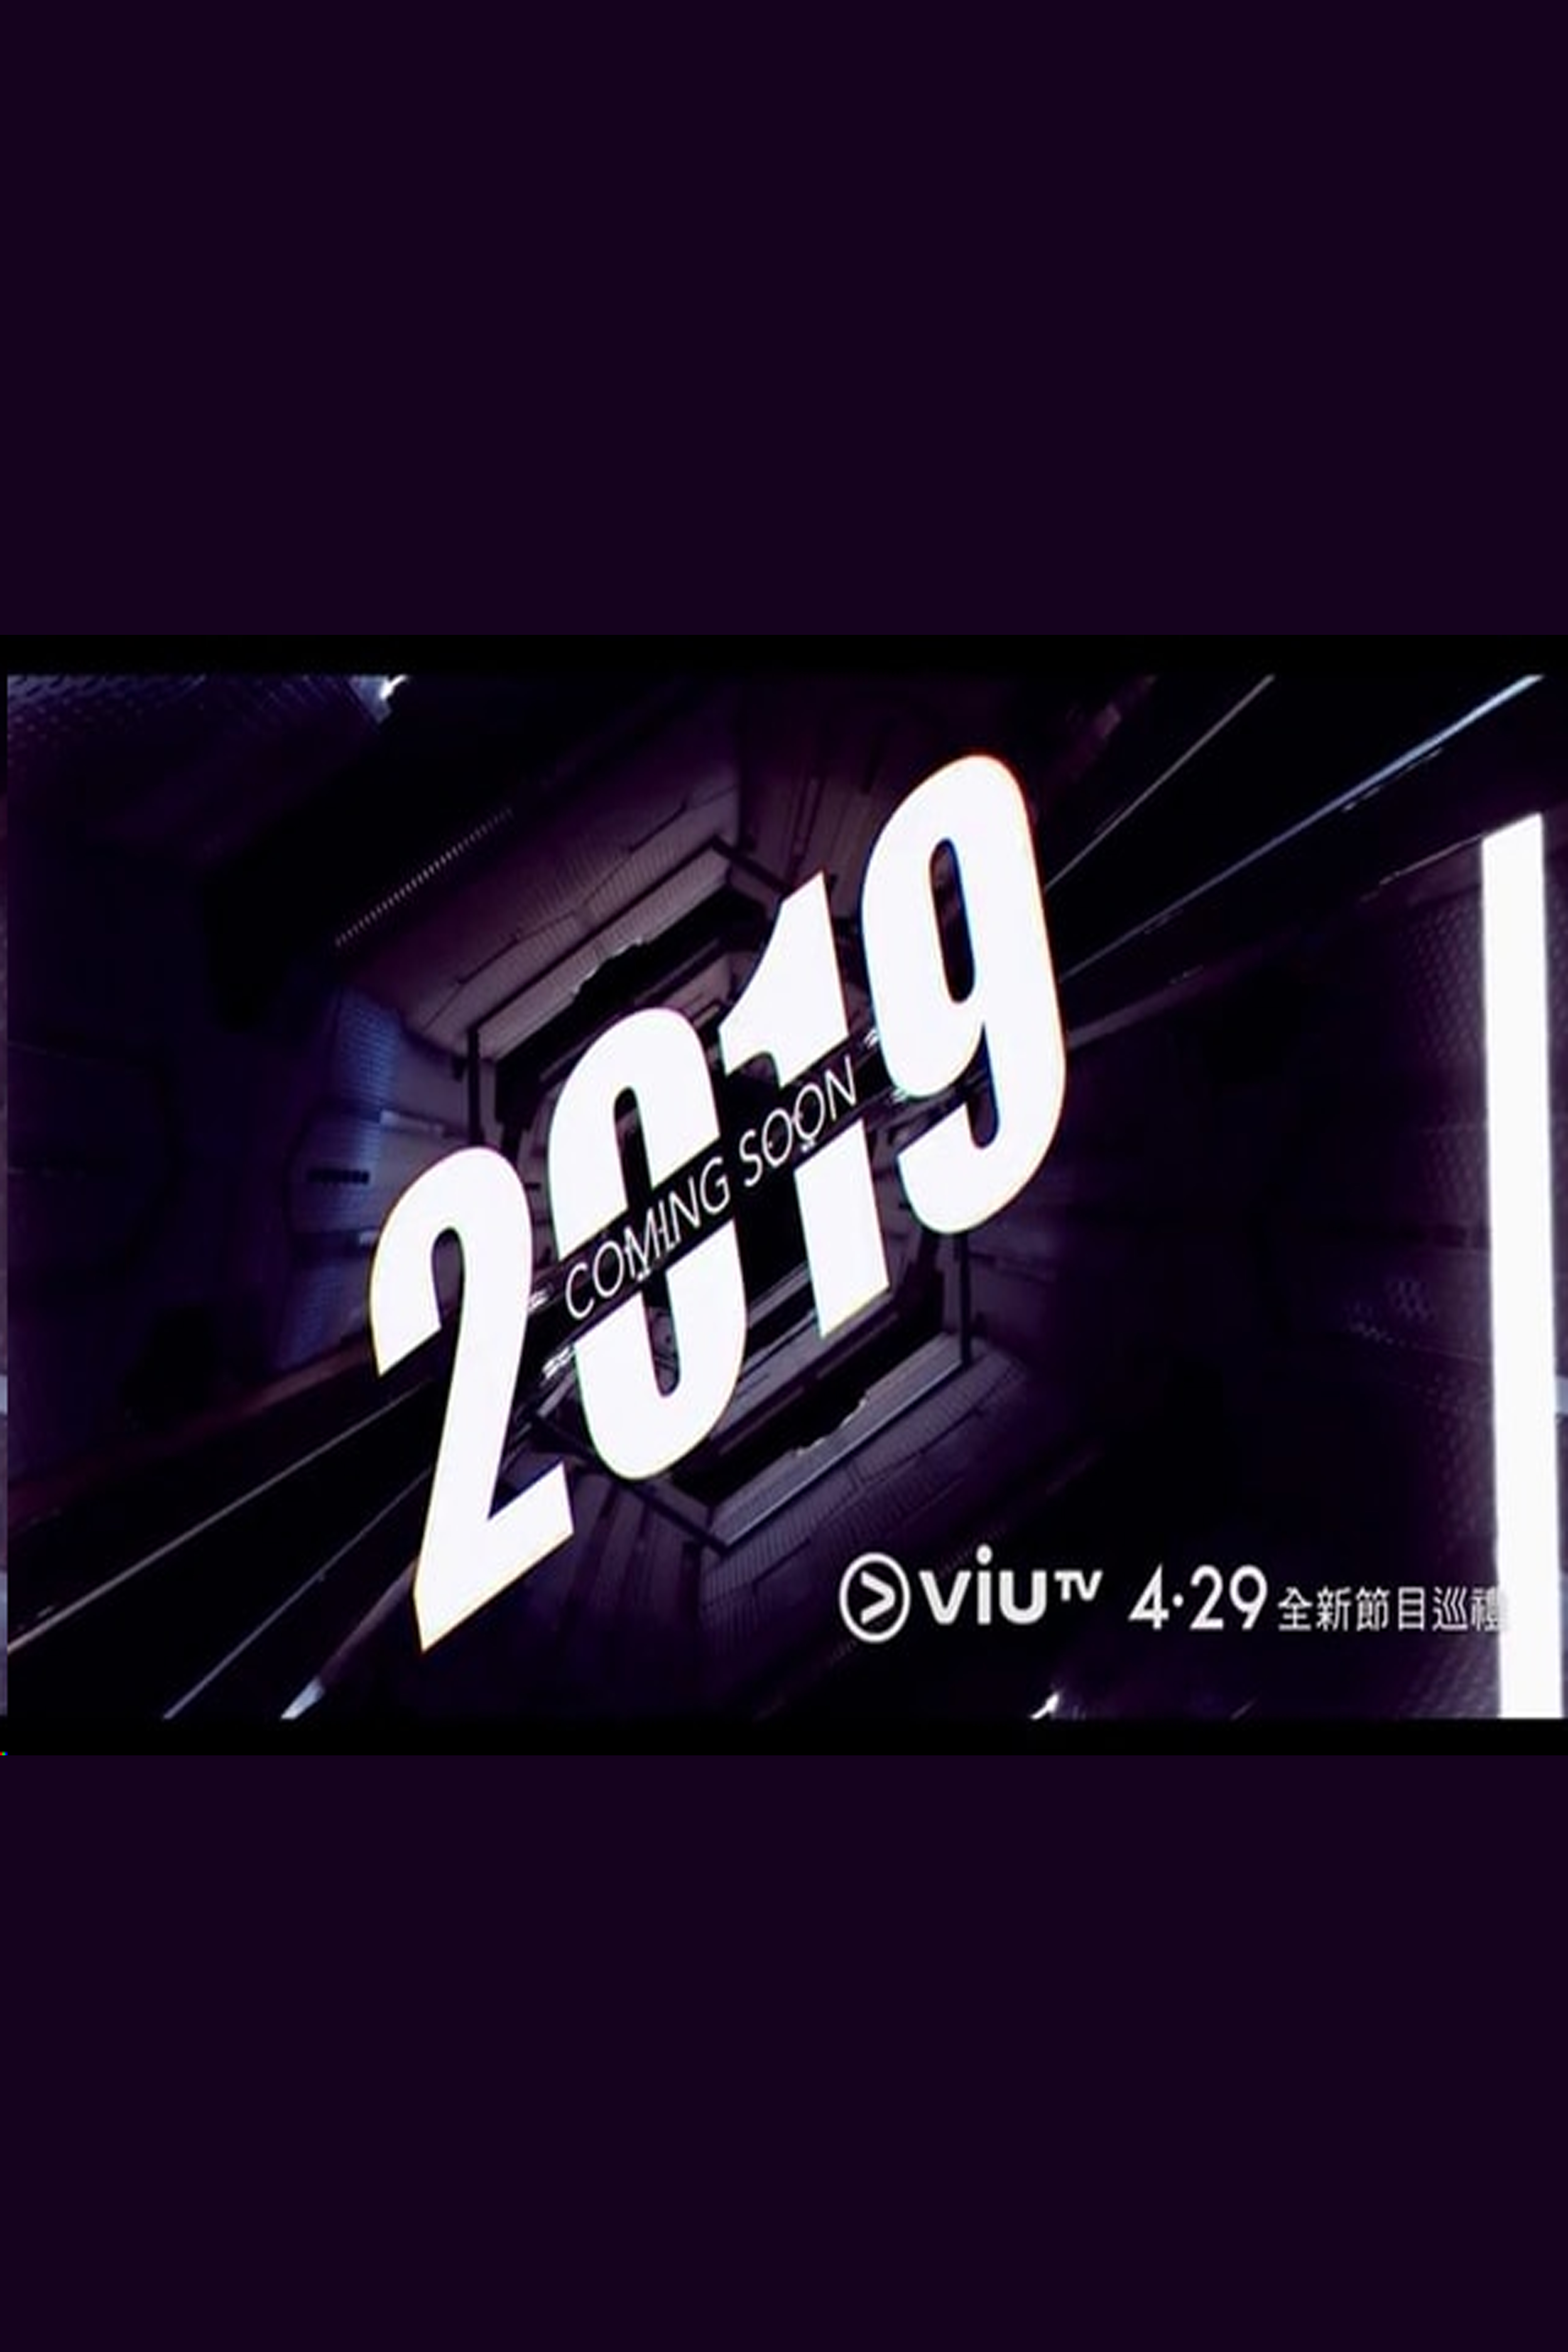 ViuTV 4.29 Program Parade - ViuTV 4.29全新節目巡禮